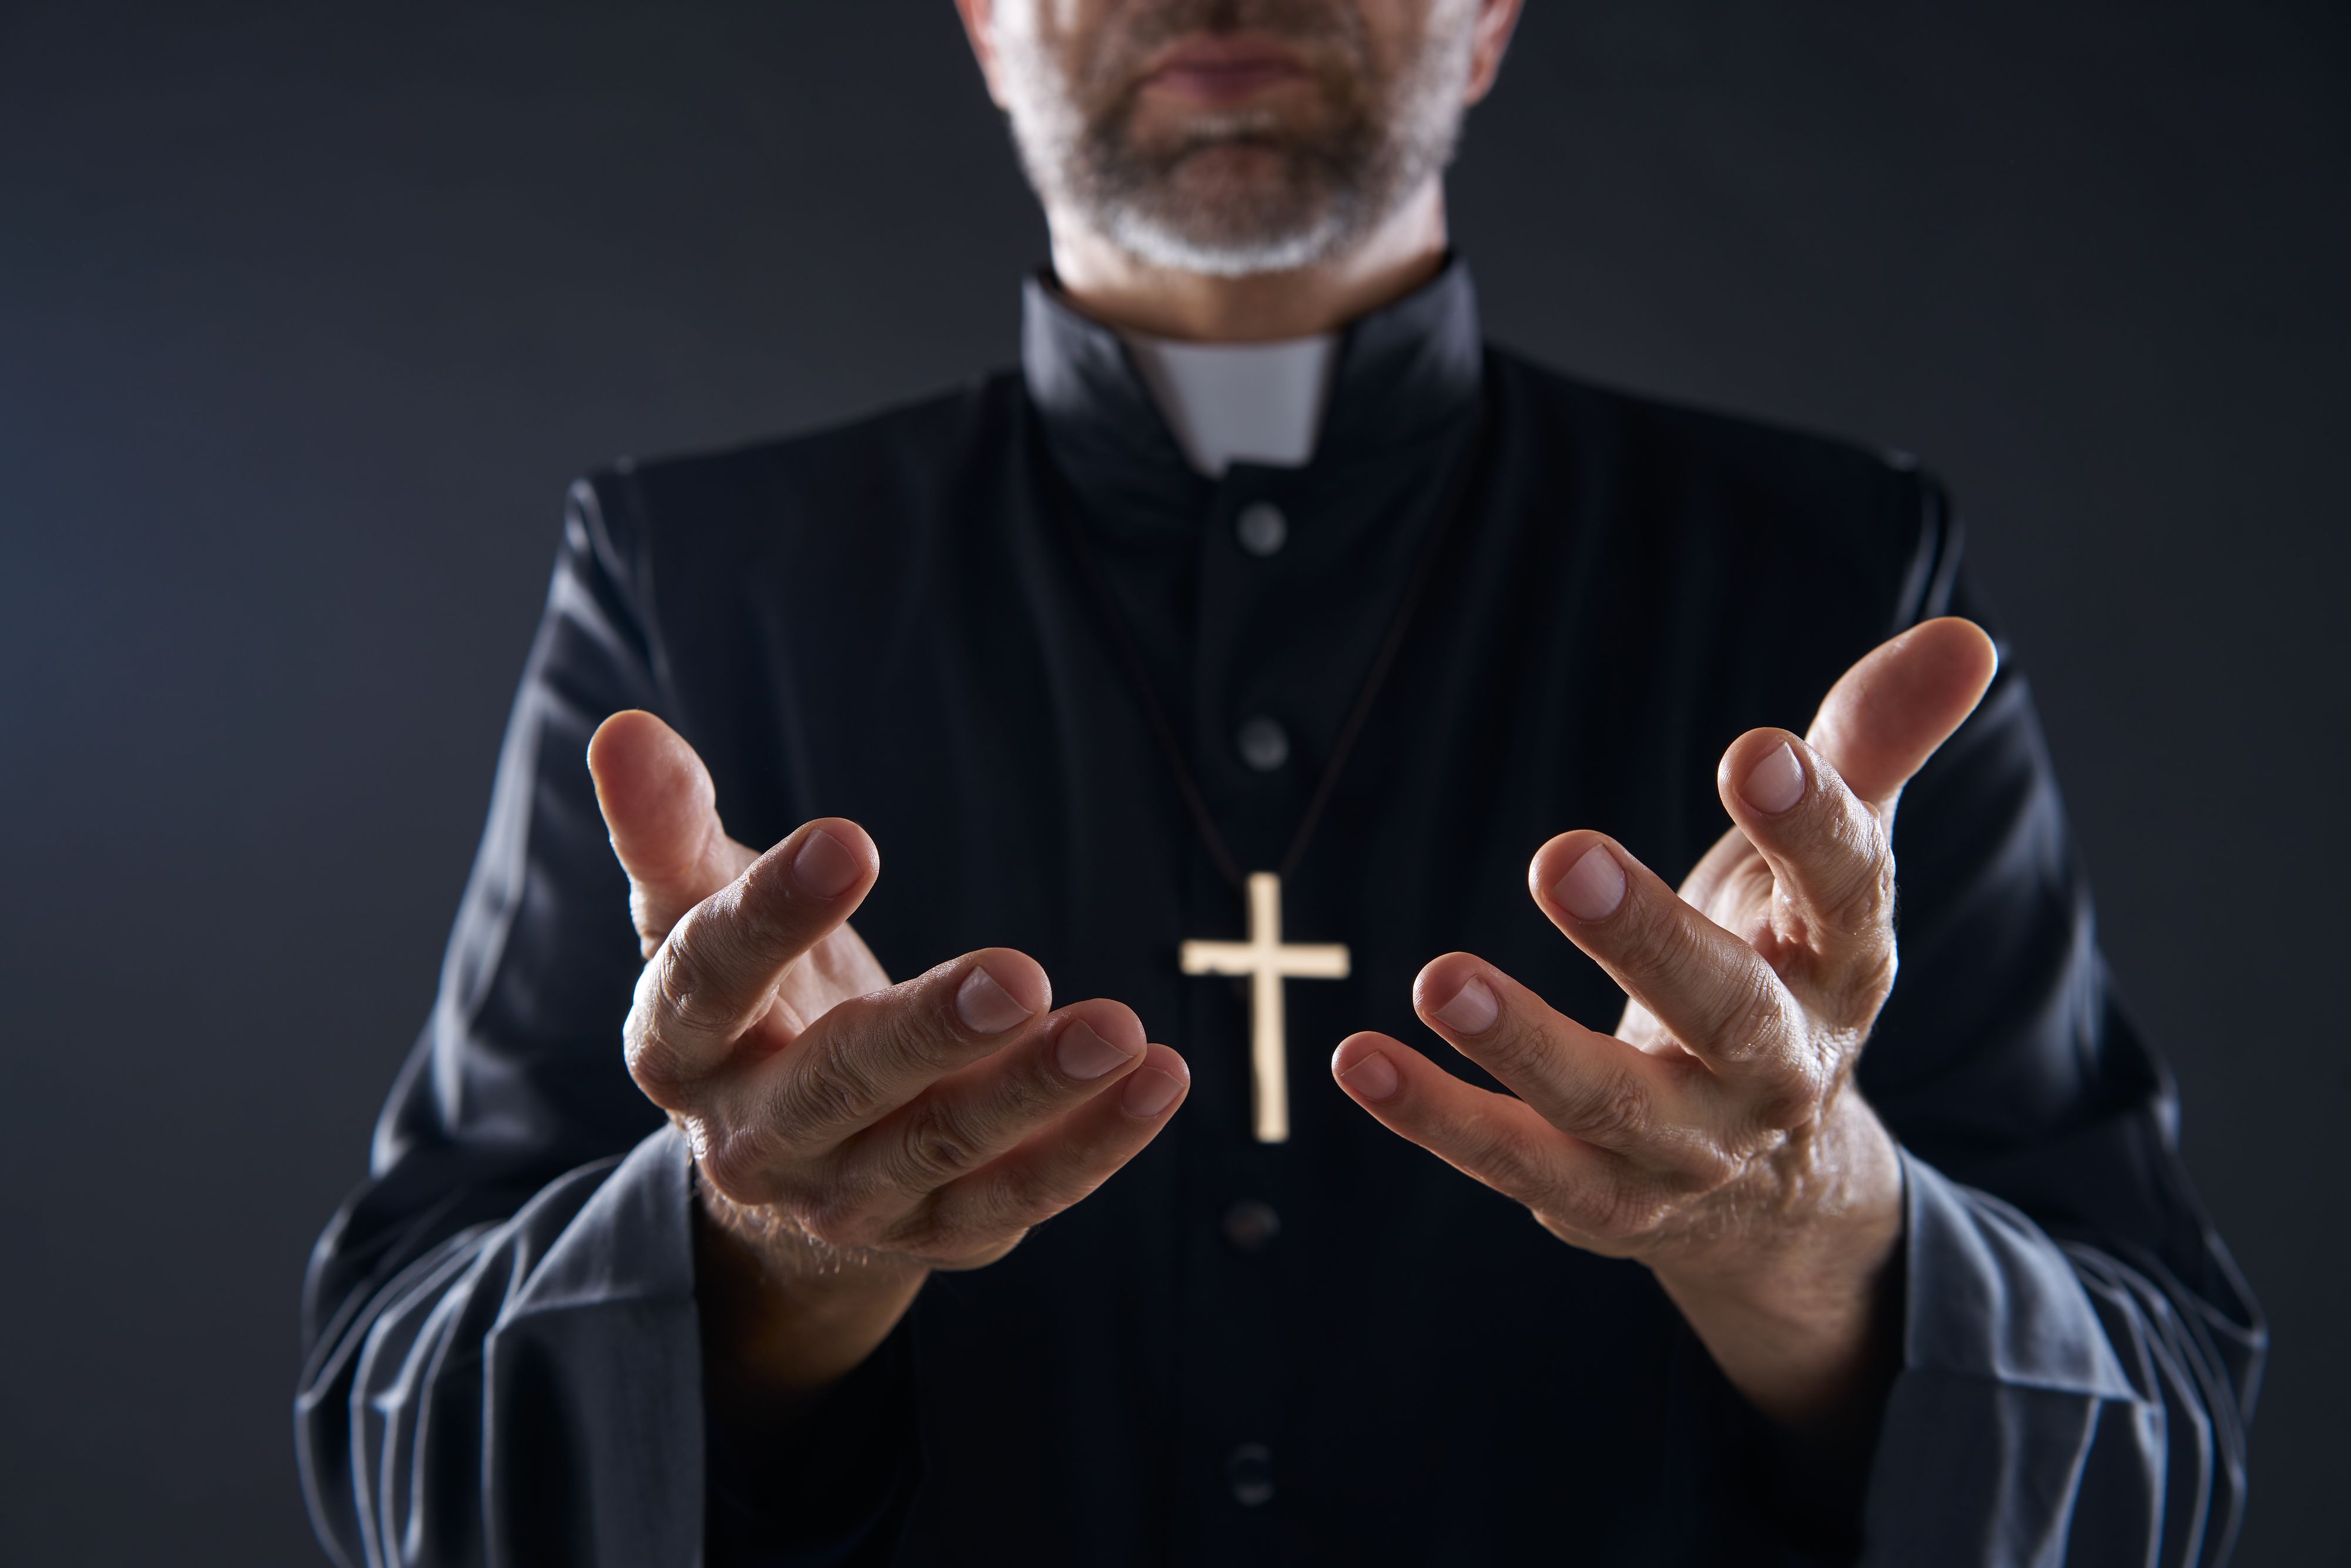 Un prêtre mis à pied pour trafic de Viagra